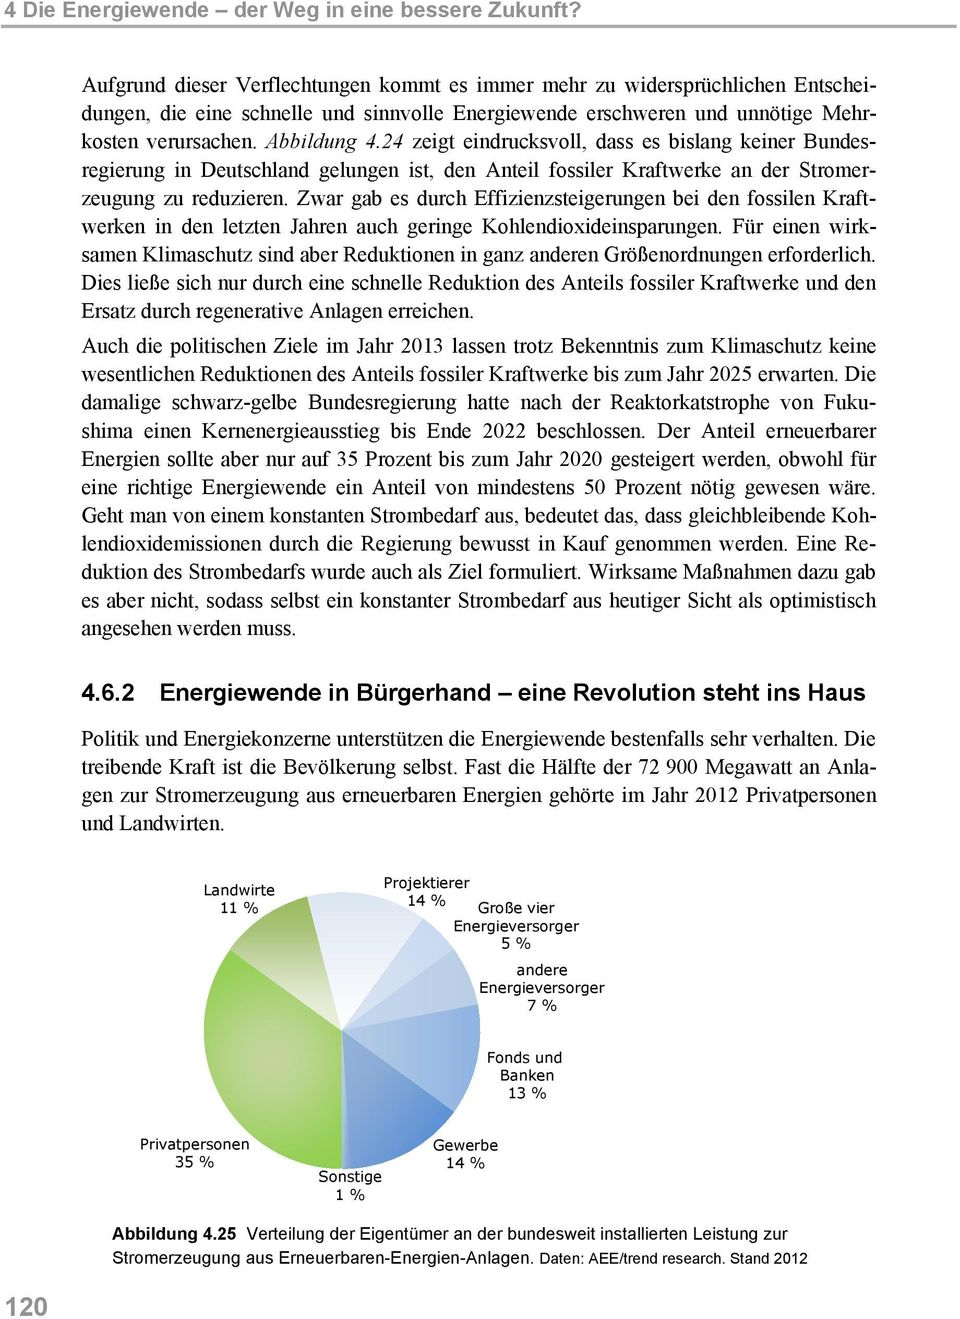 24 zeigt eindrucksvoll, dass es bislang keiner Bundesregierung in Deutschland gelungen ist, den Anteil fossiler Kraftwerke an der Stromerzeugung zu reduzieren.